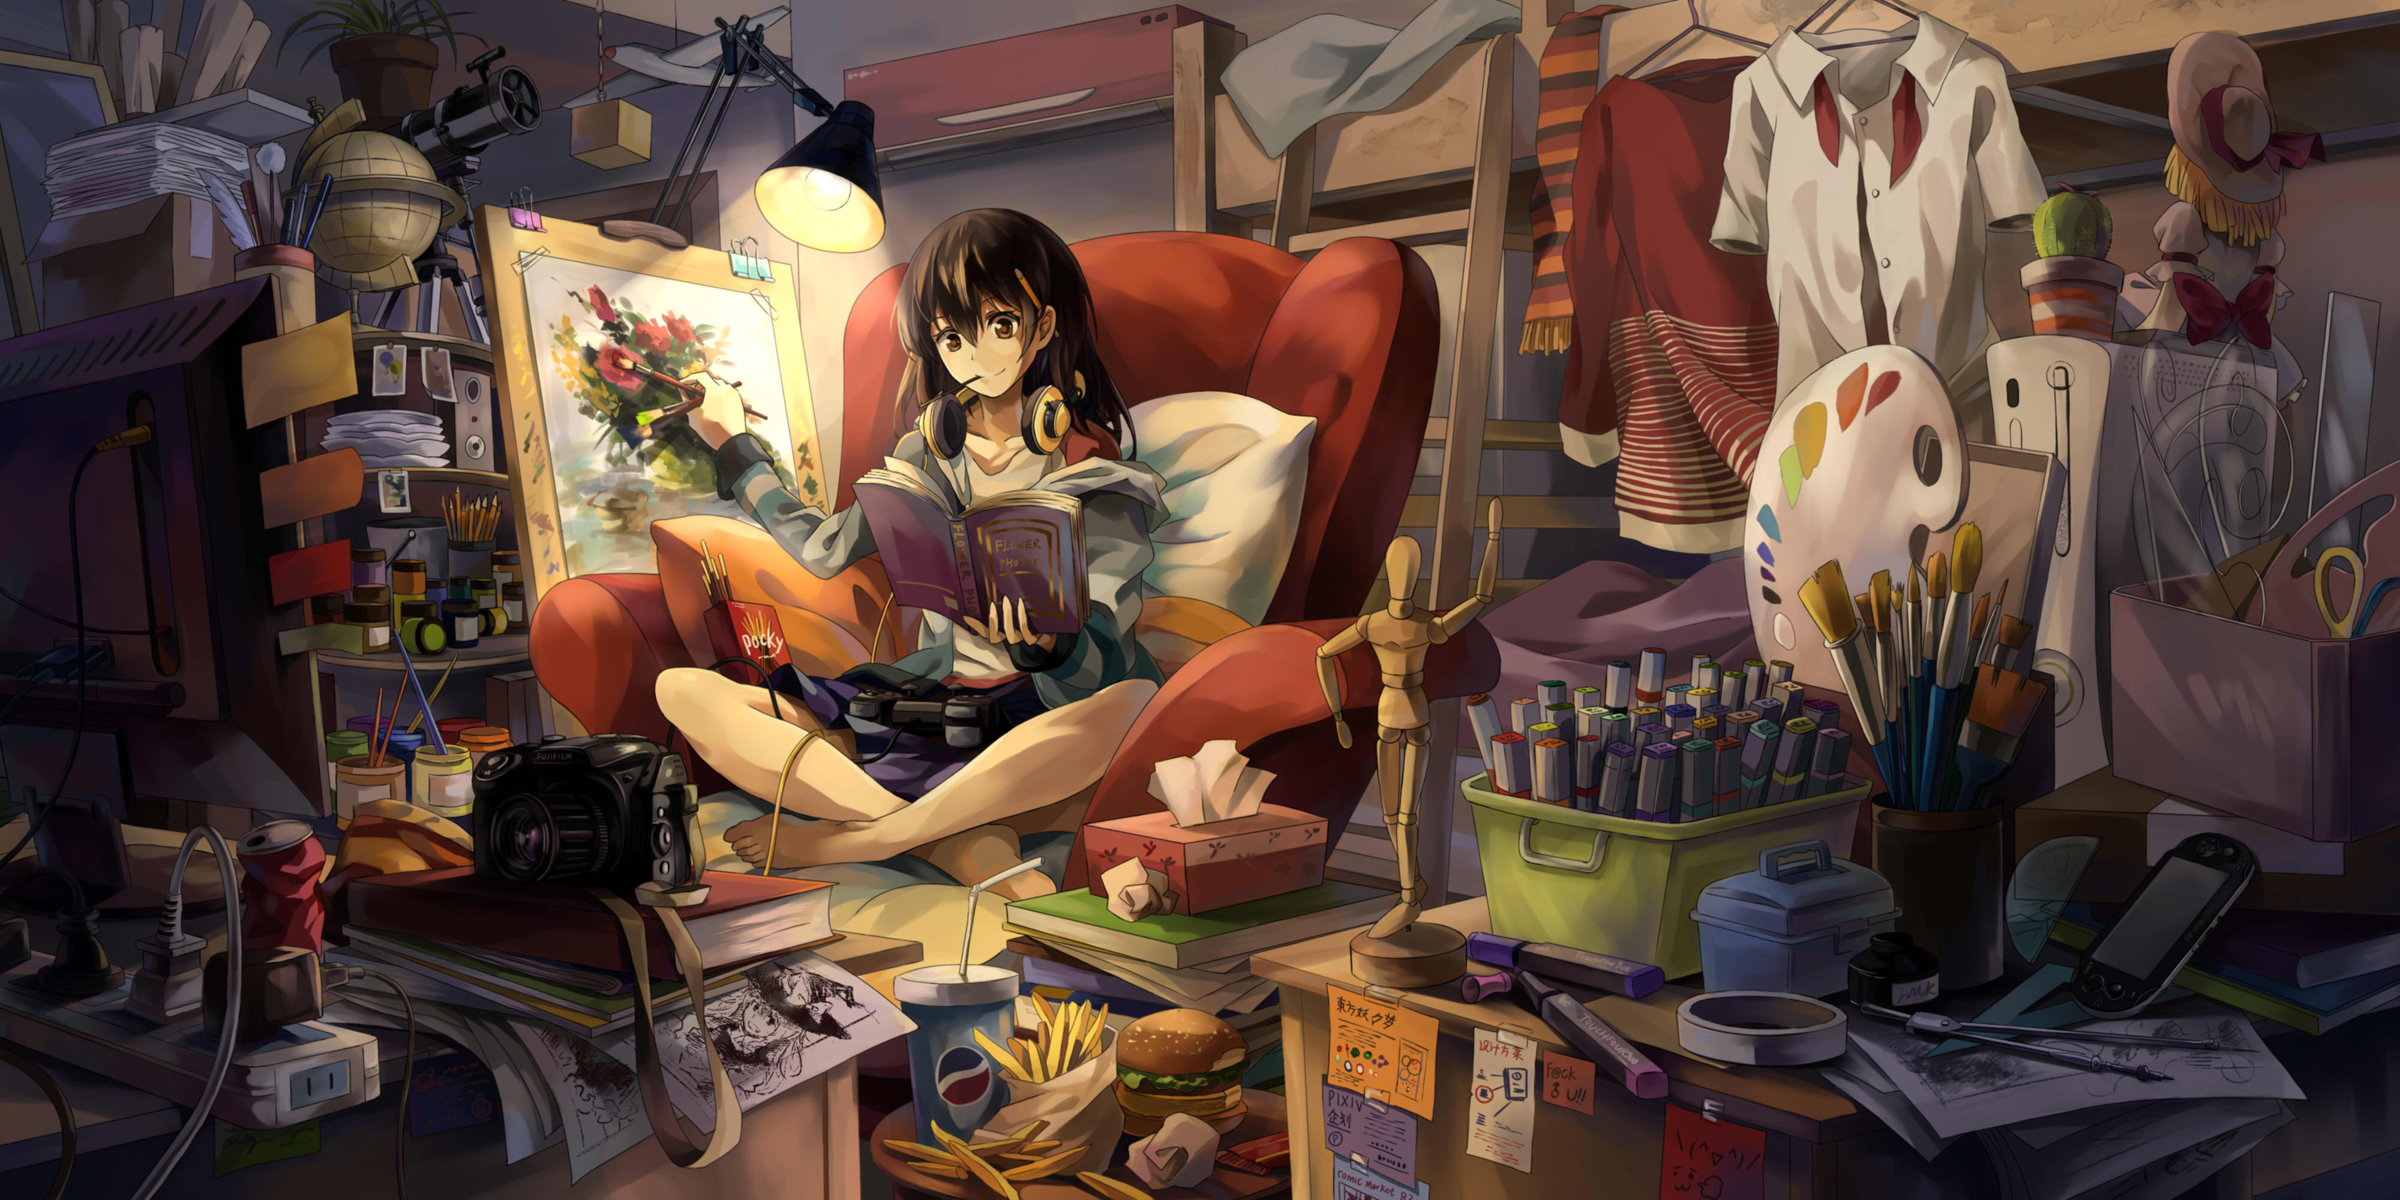 girl, anime, book, easel, headphones, lamp, room 4K Ultra